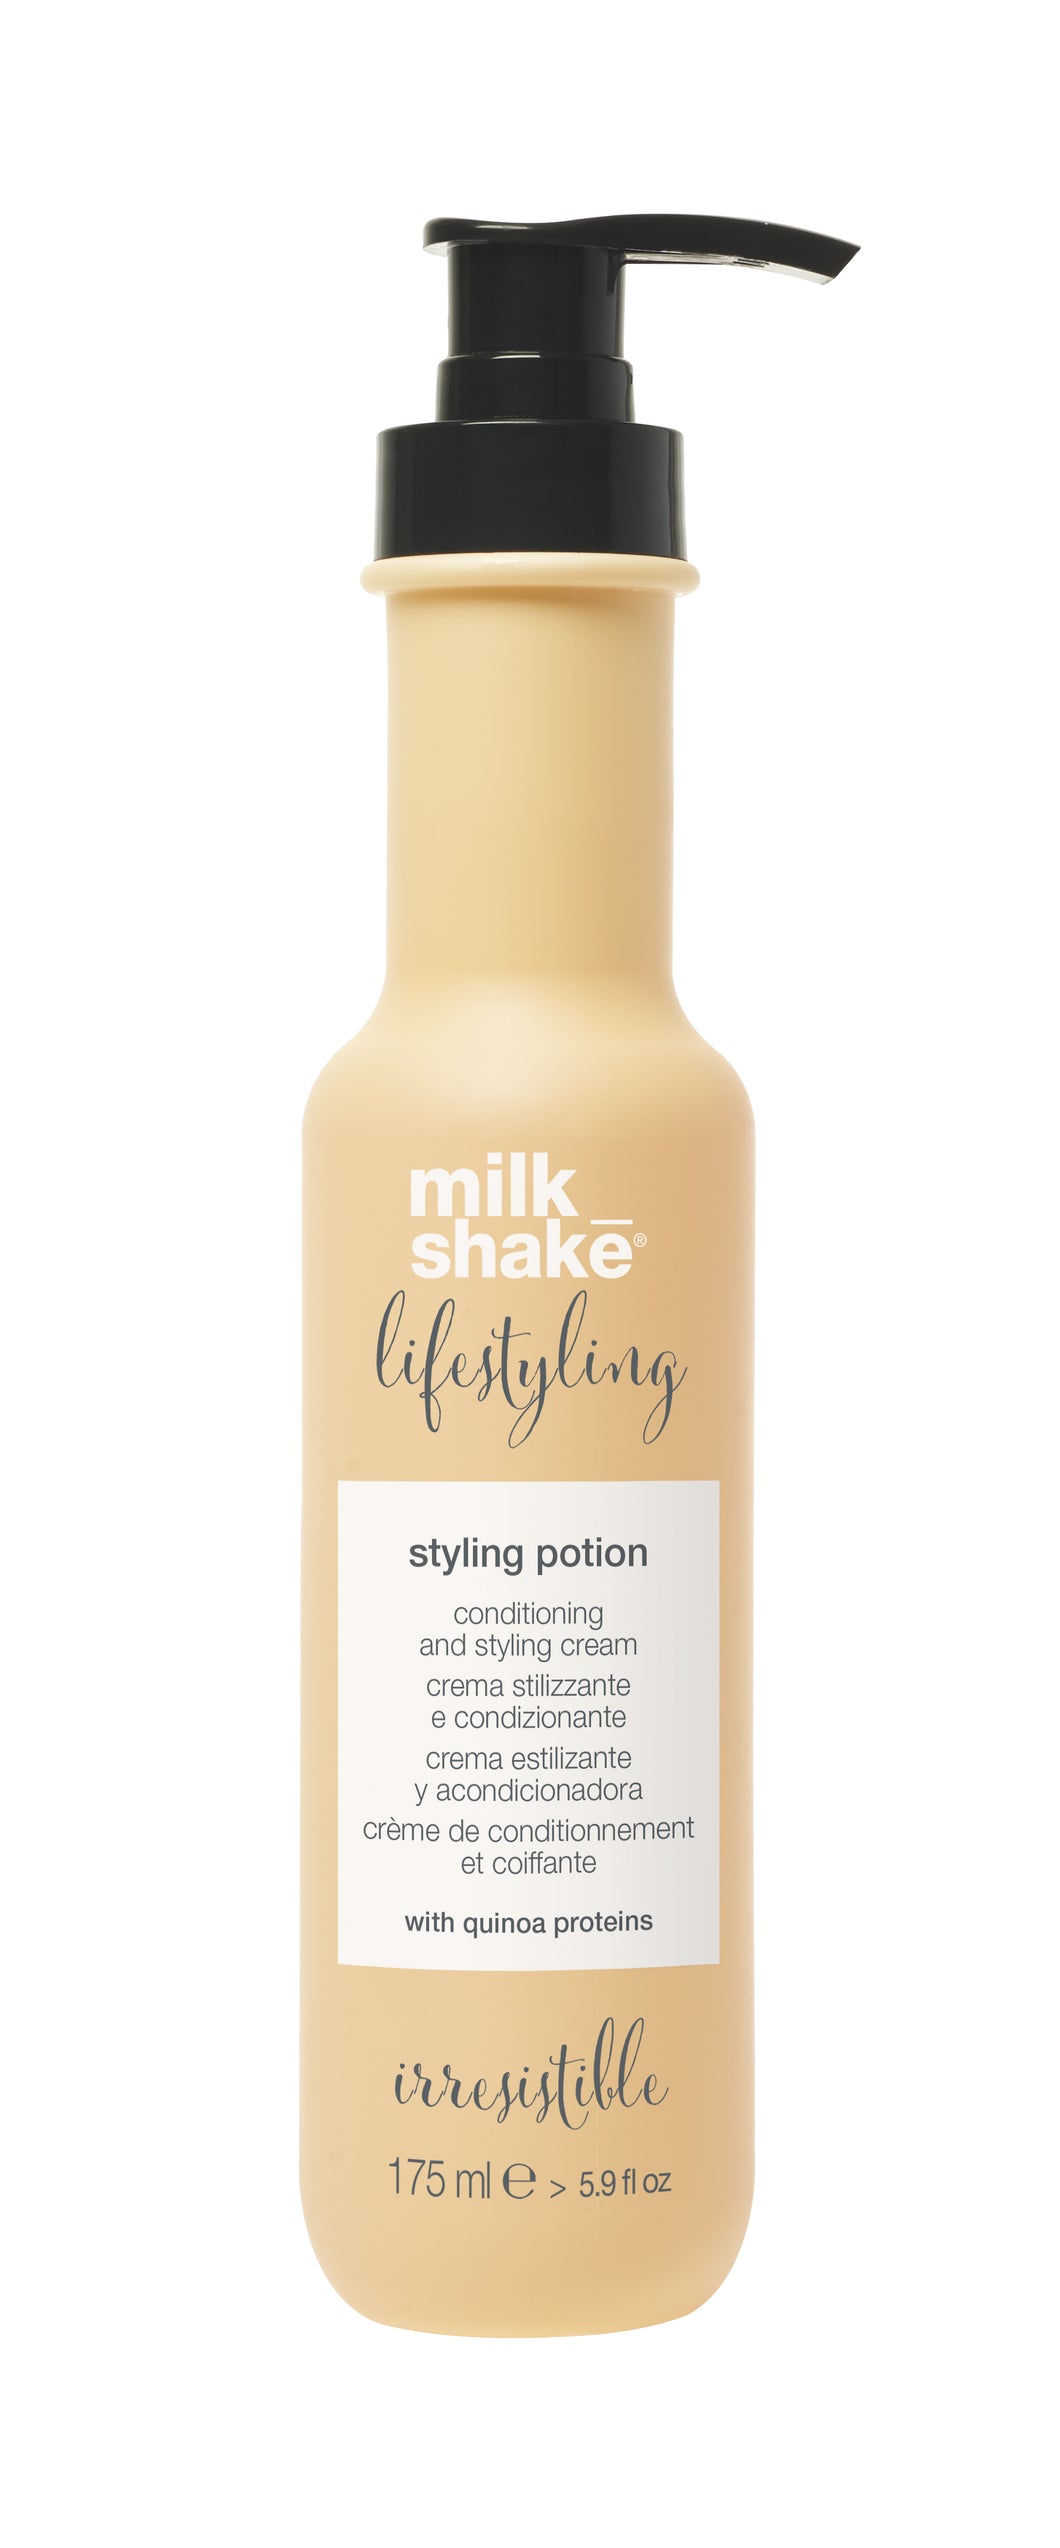 milk_shake styling_potion product image